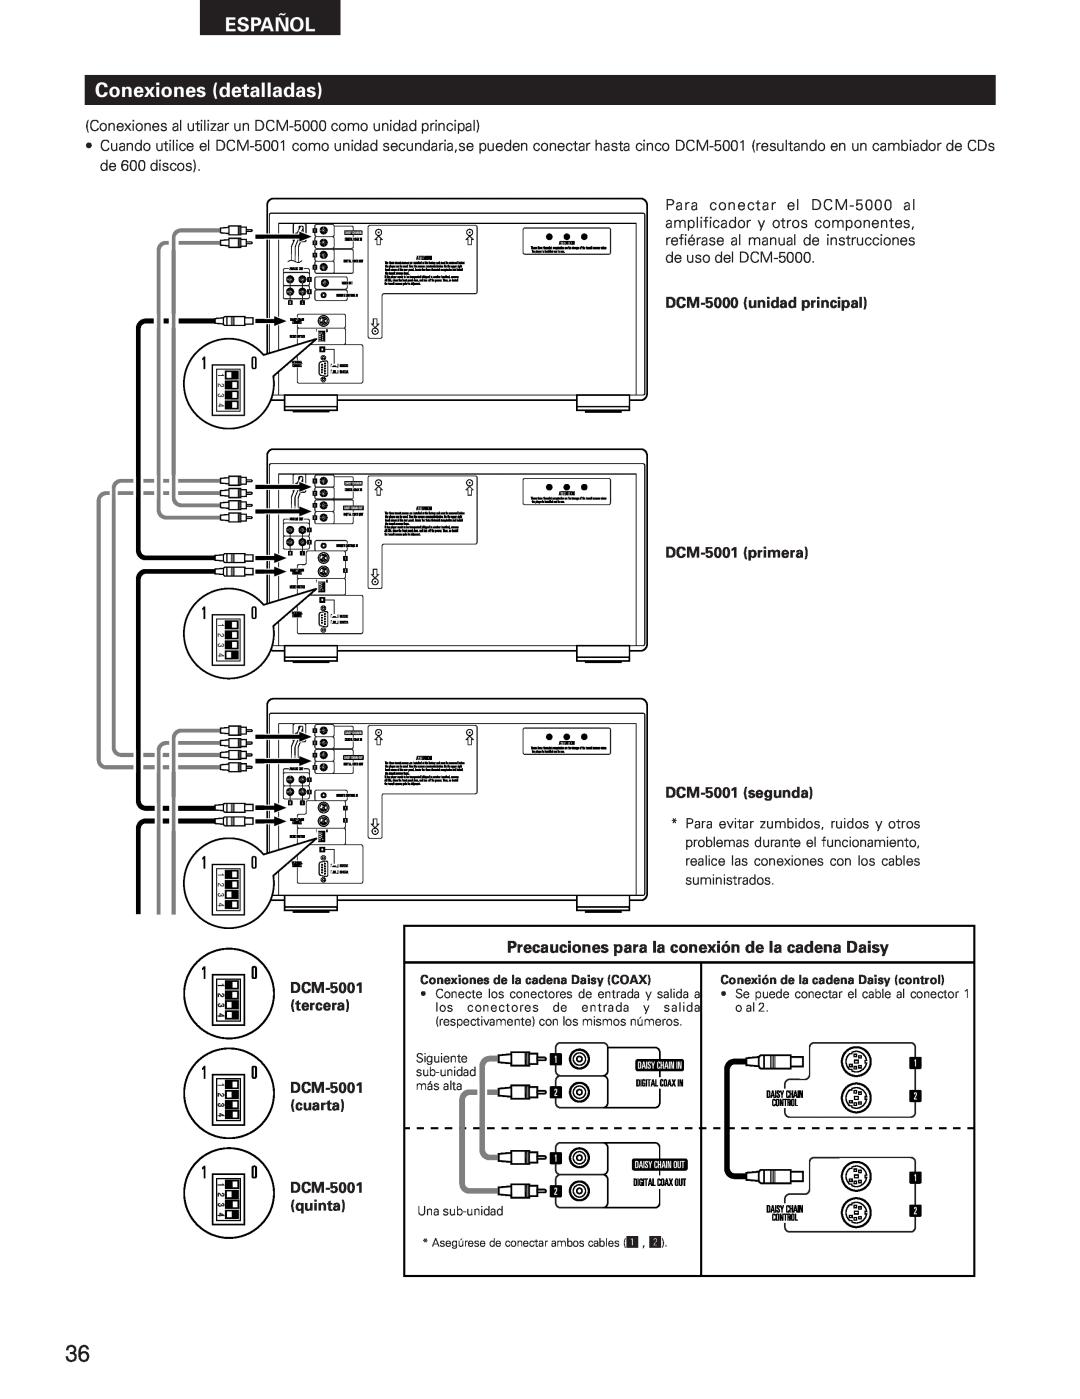 Denon DCM-5001 manual ESPAÑOL Conexiones detalladas, Precauciones para la conexión de la cadena Daisy 